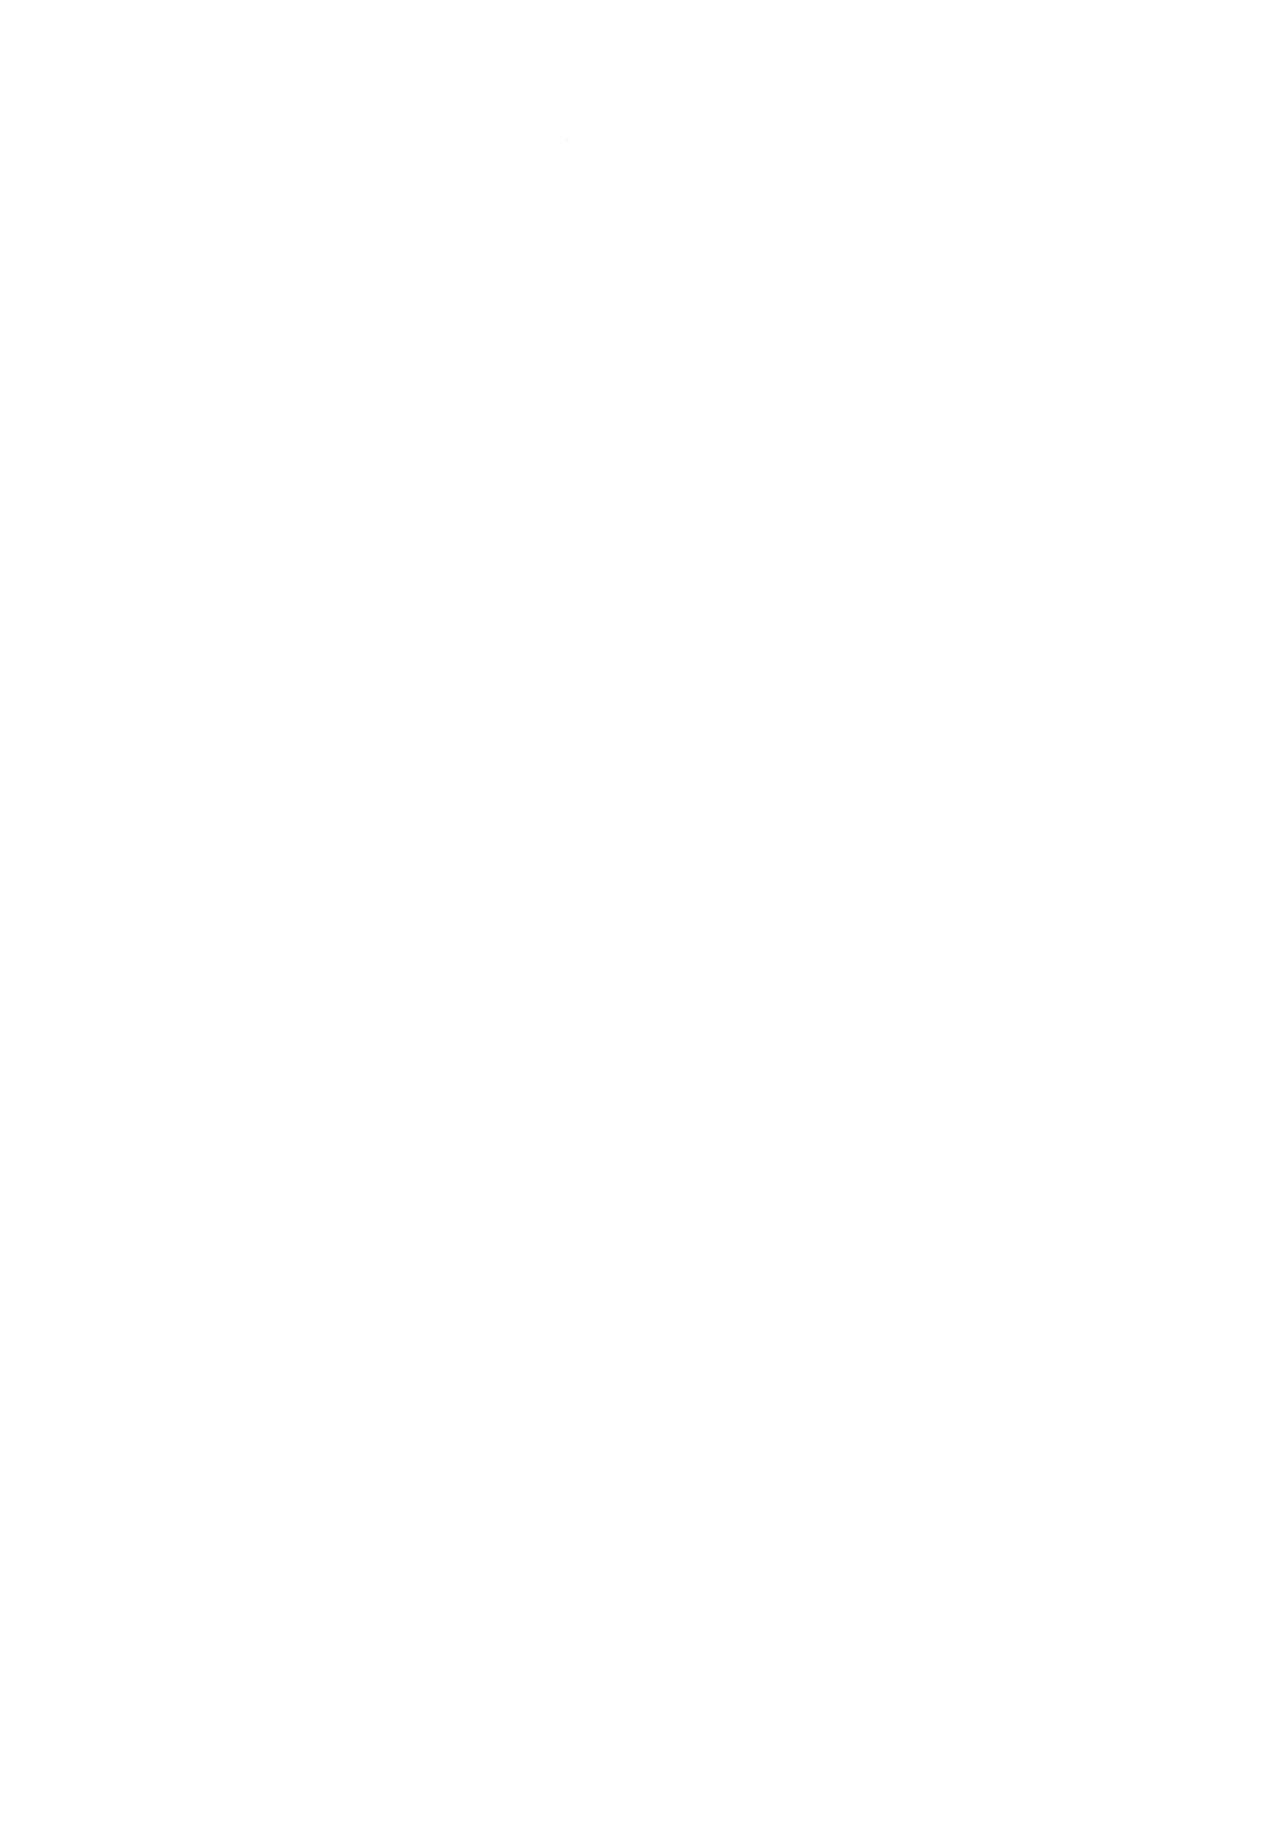 (我、夜戦に突入す!6) [マシュマロ風船 (かゆみ止め)] ショタ提督が鹿島と練習Hする本 (艦隊これくしょん -艦これ-)